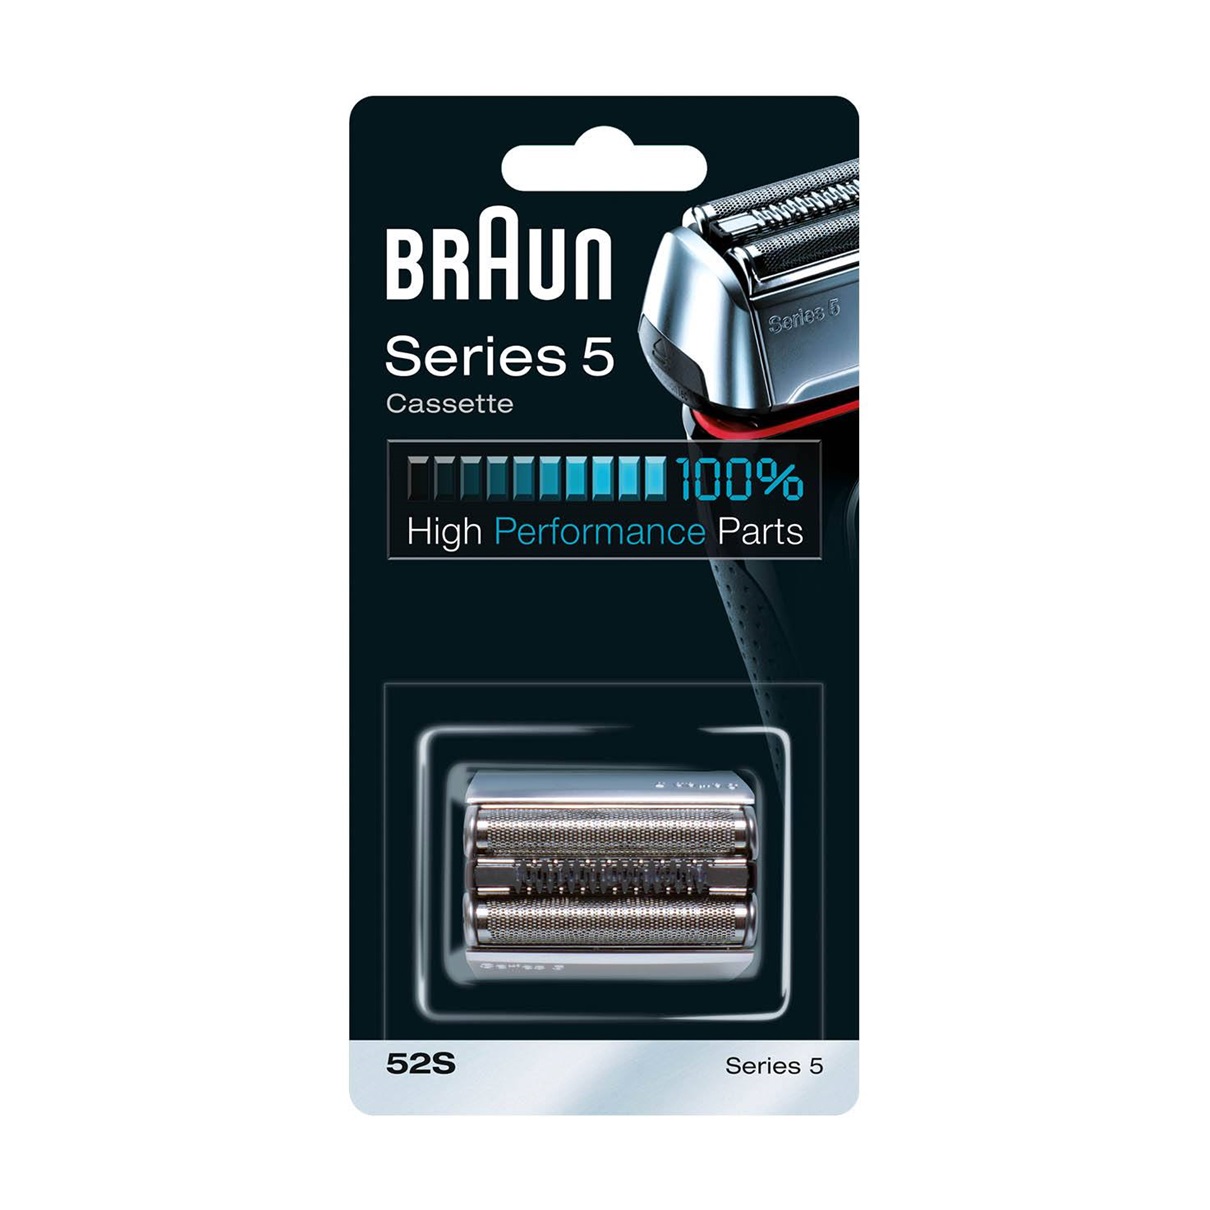 сетка и режущий блок для бритв braun 32s Сетка и режущий блок для бритв Braun 52S